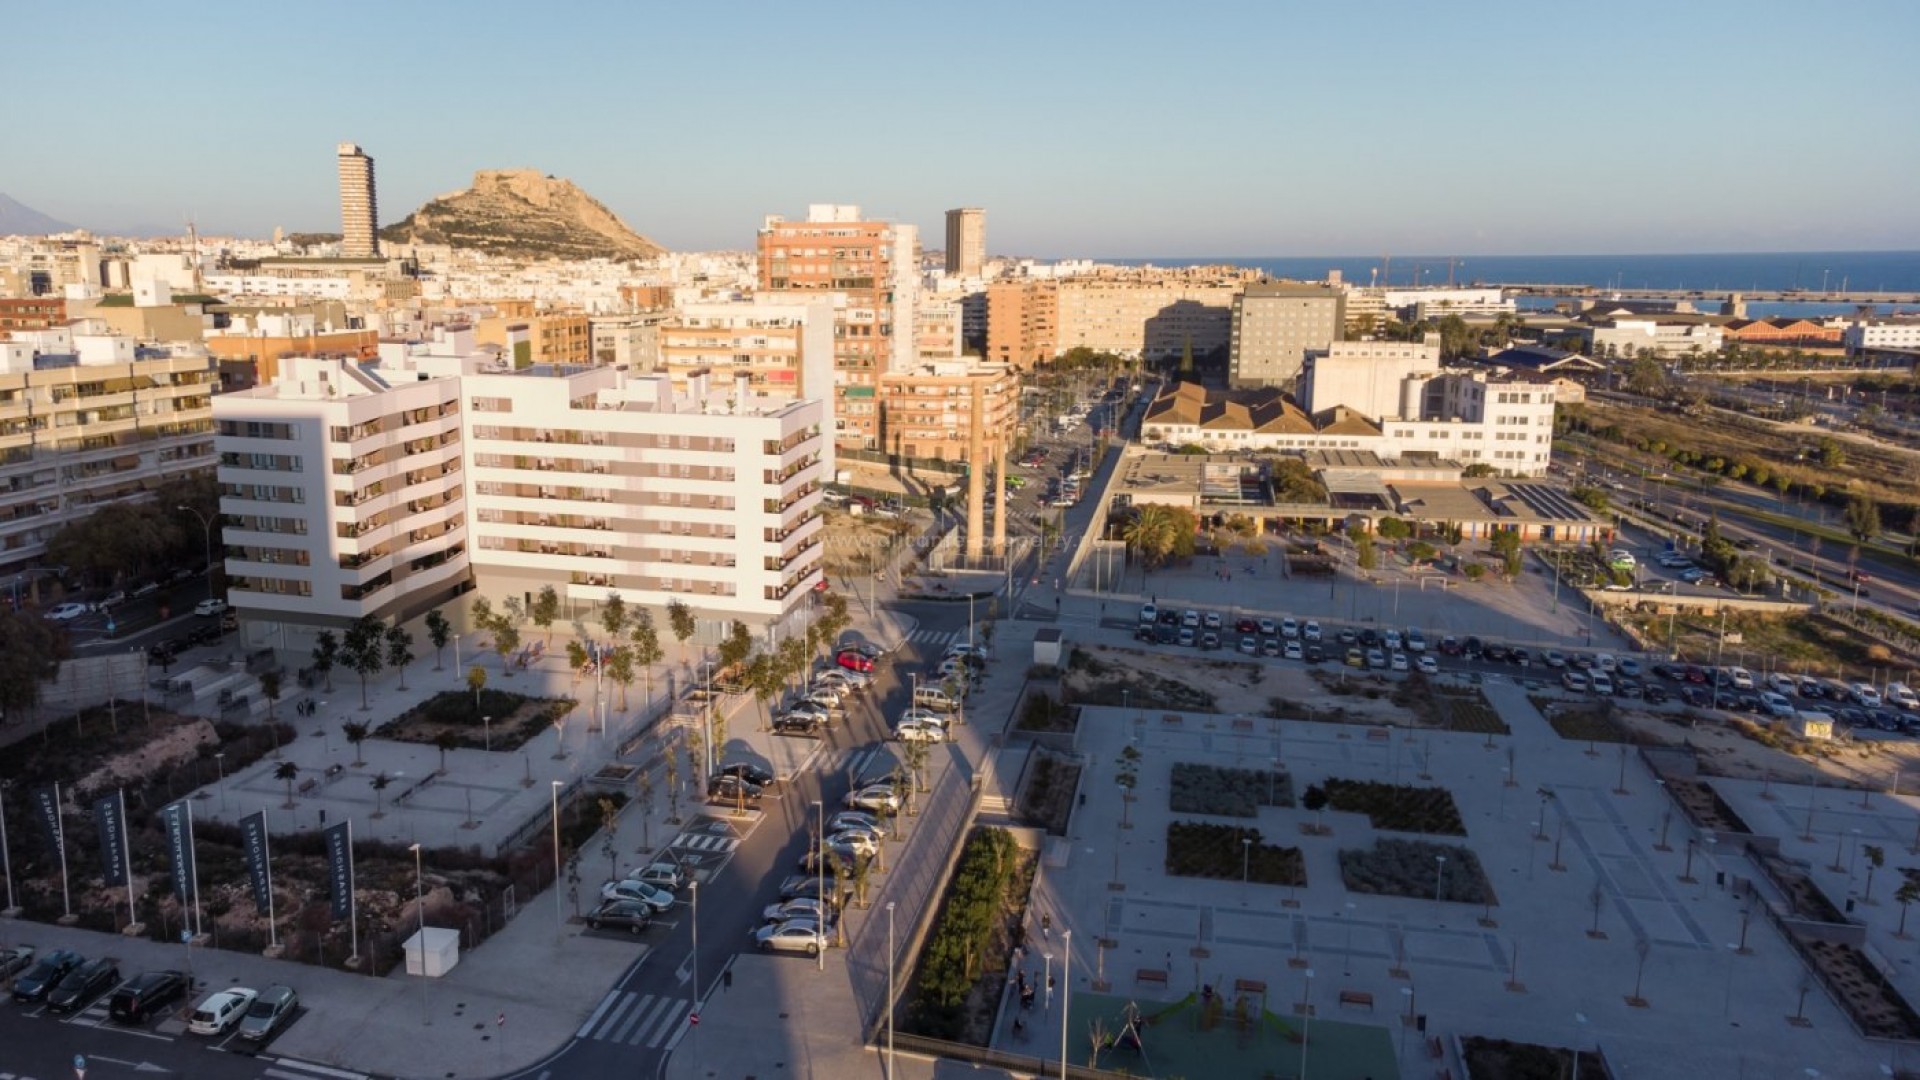 Leiligheter i Alicante by, 2/3 soverom, 2 bad, takterrasse med fantastisk havutsikt, treningsstudio  og garasje i boligkomplekset. Nær sentrum